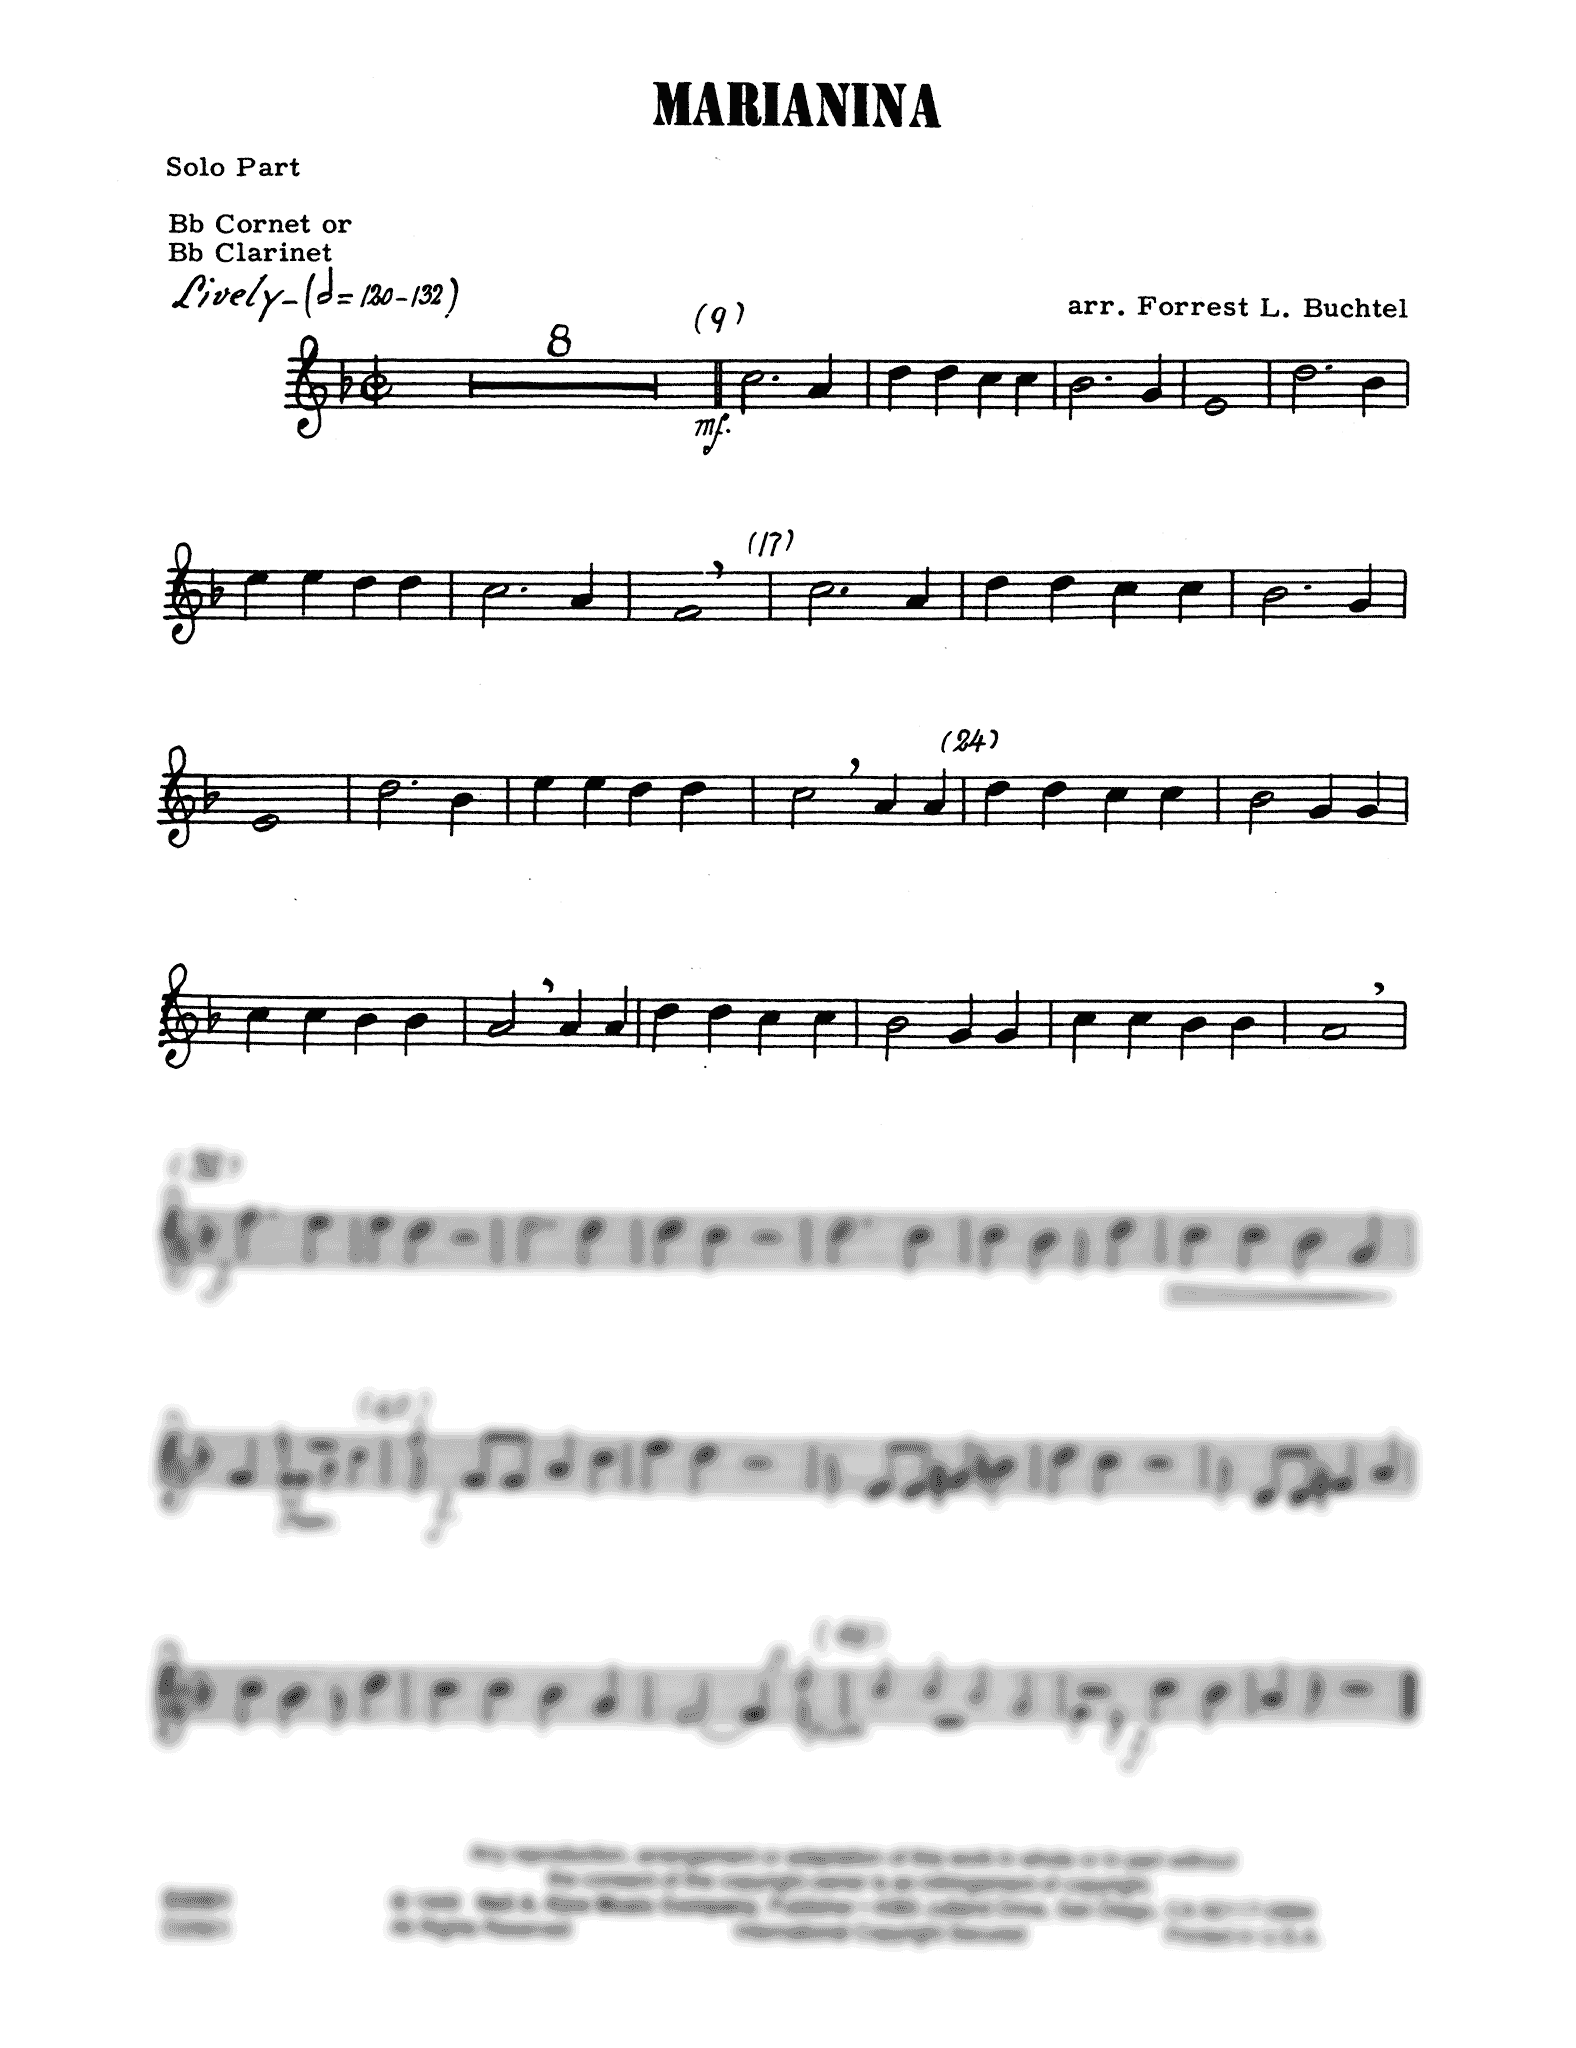 Marianina Solo Clarinet part